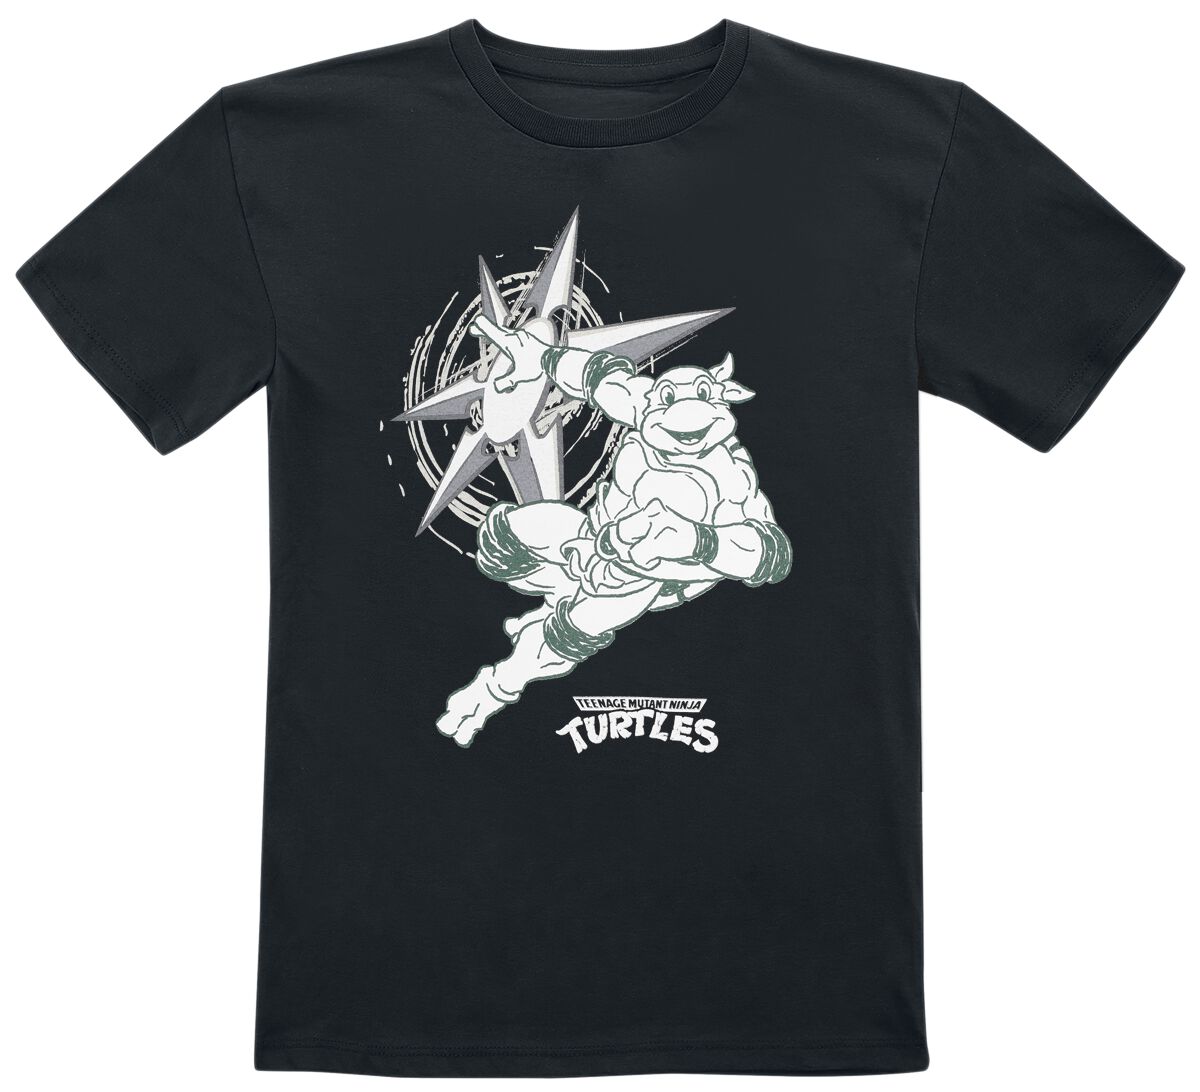 Teenage Mutant Ninja Turtles T-Shirt für Kinder - Kids - Turtle Power - für Mädchen & Jungen - schwarz  - EMP exklusives Merchandise!